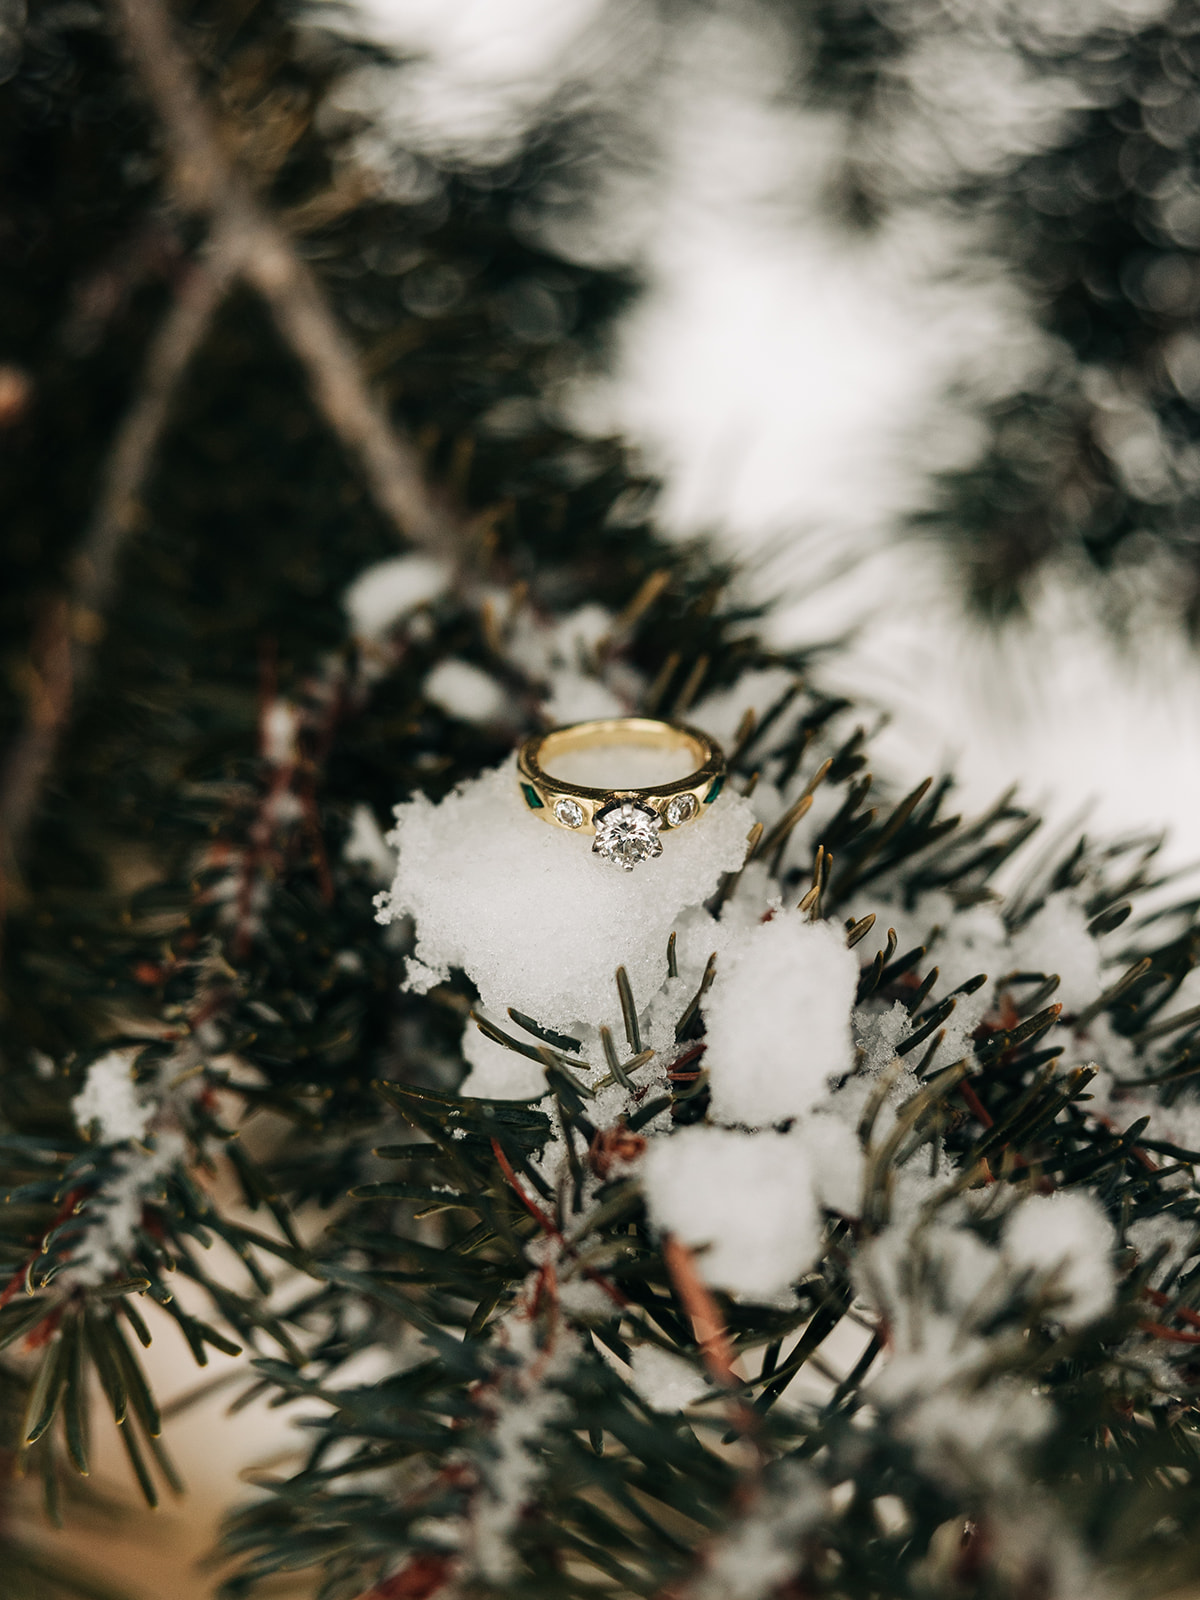 wedding ring placed on a snowy pine leaf